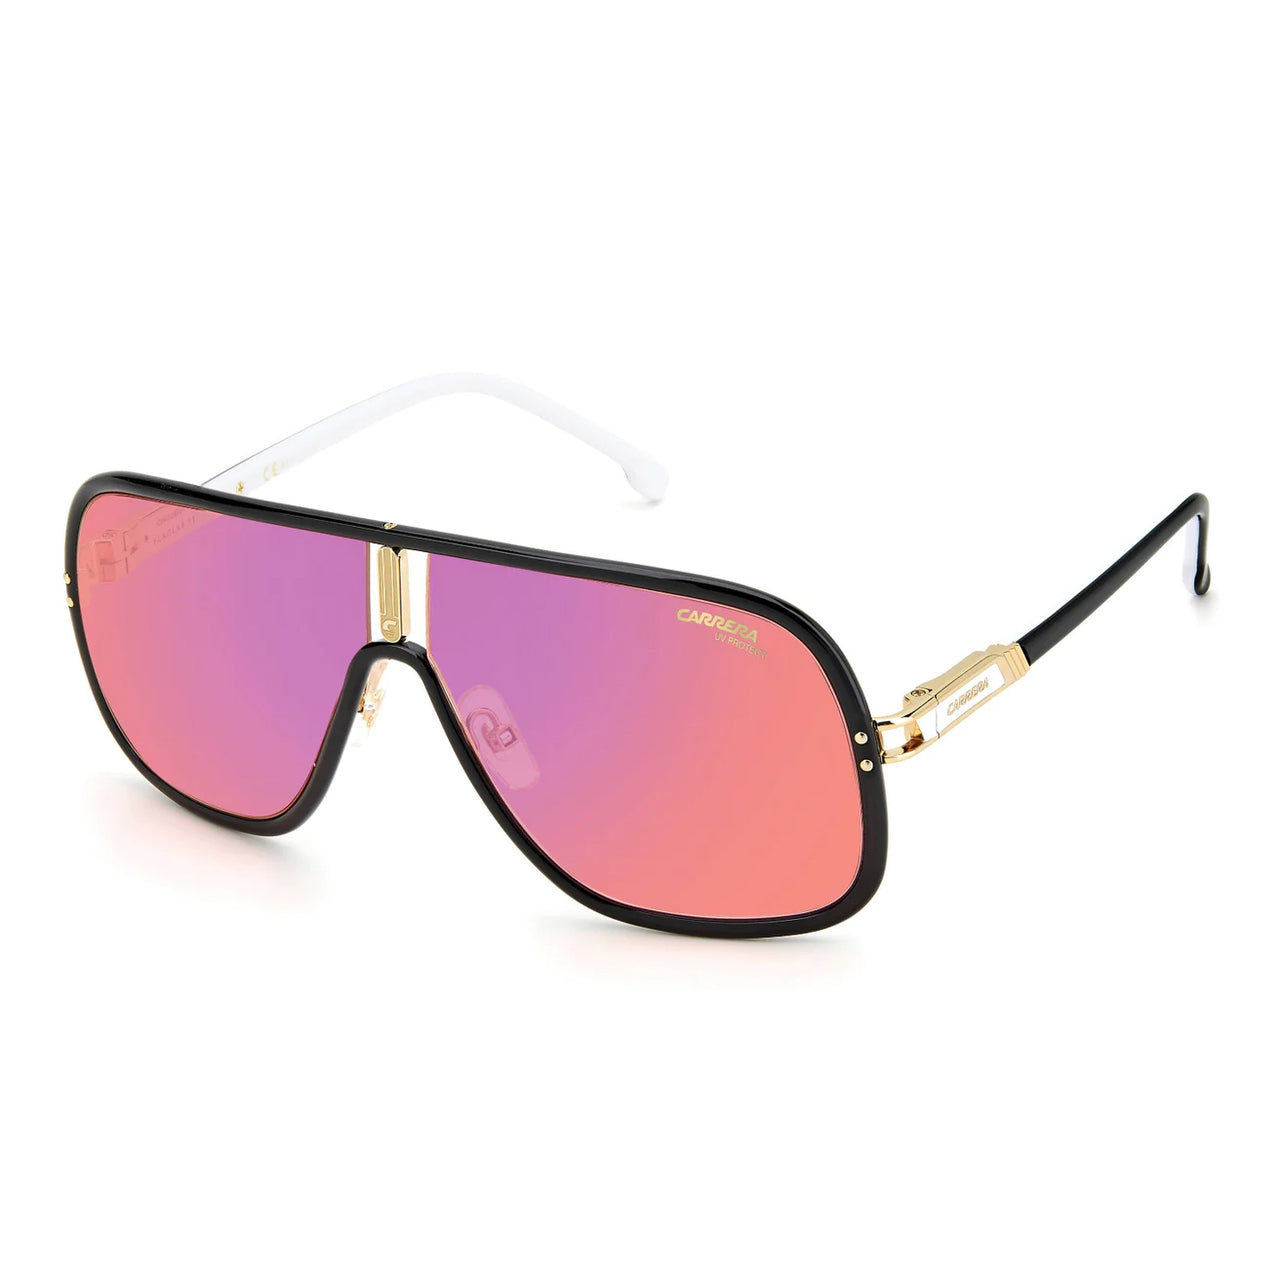 Buy Blue Sunglasses for Men by CARRERA Online | Ajio.com